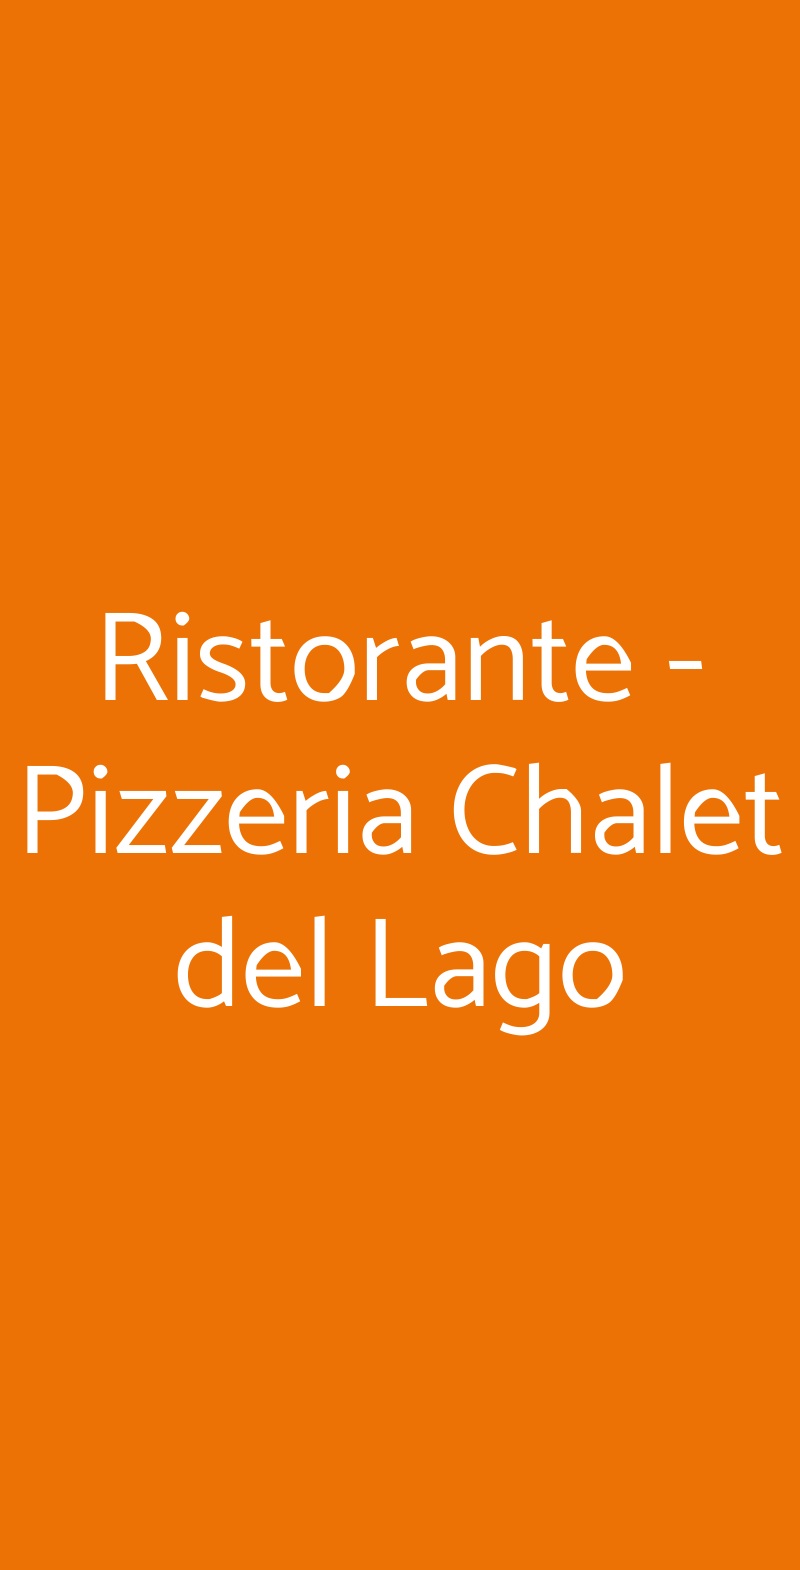 Ristorante - Pizzeria Chalet del Lago Avigliana menù 1 pagina